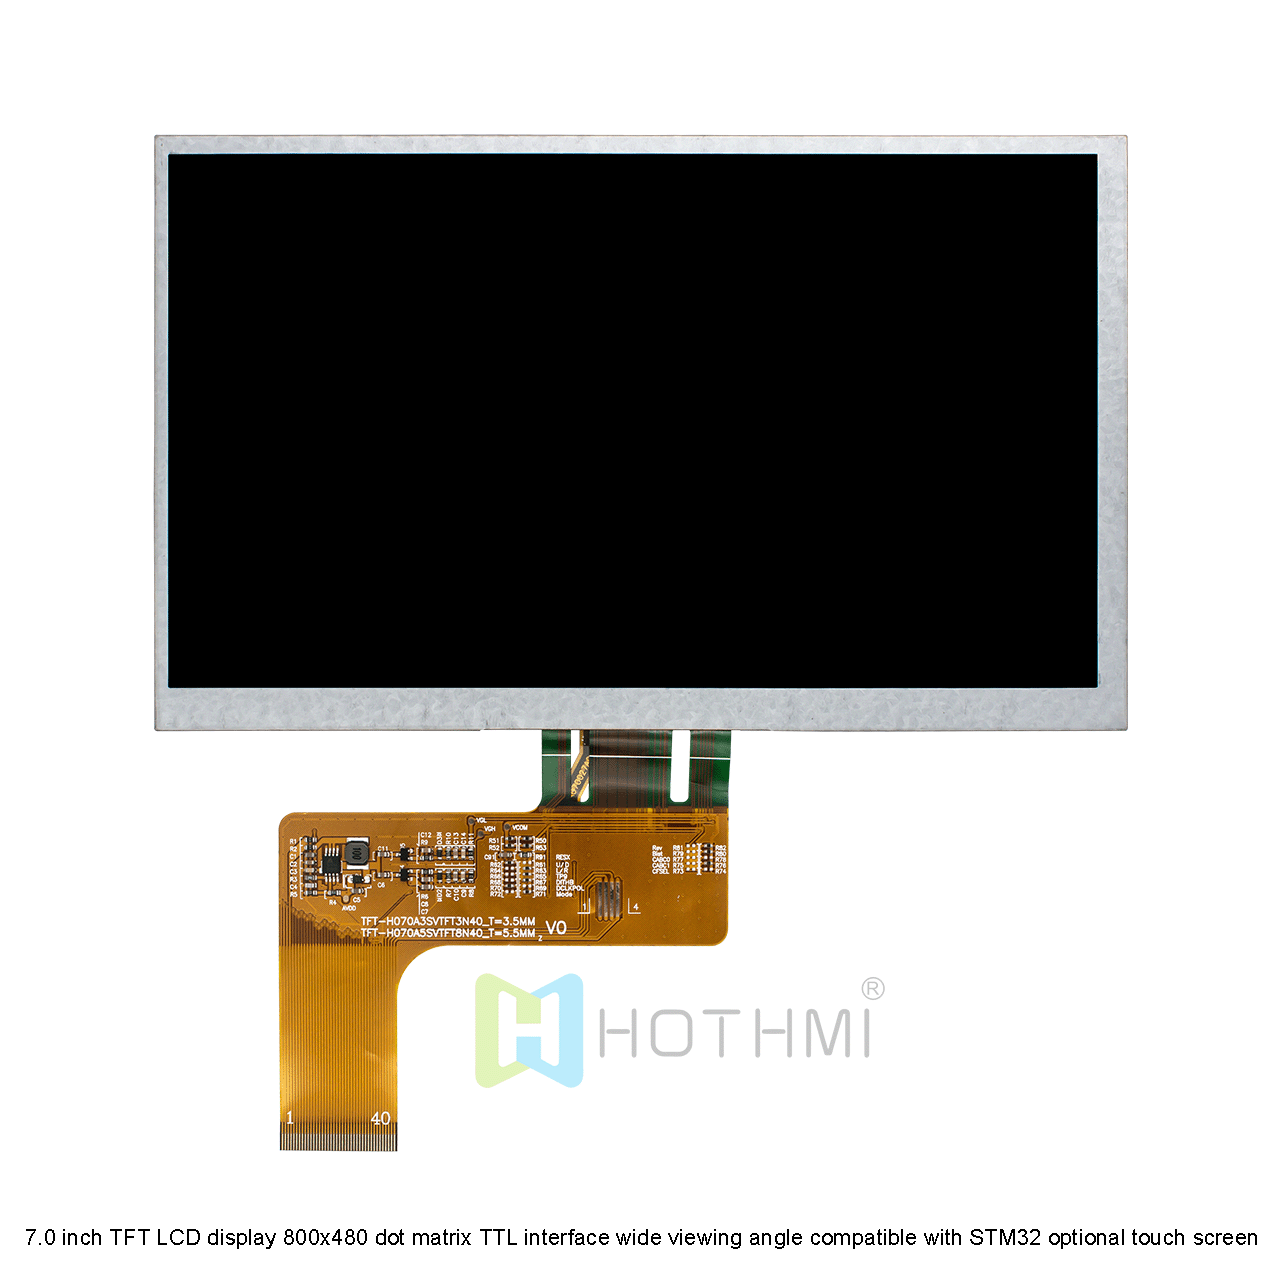 7.0寸TFT液晶显示屏 800x480点阵 TTL接口 宽视角兼容STM32 可选触摸屏